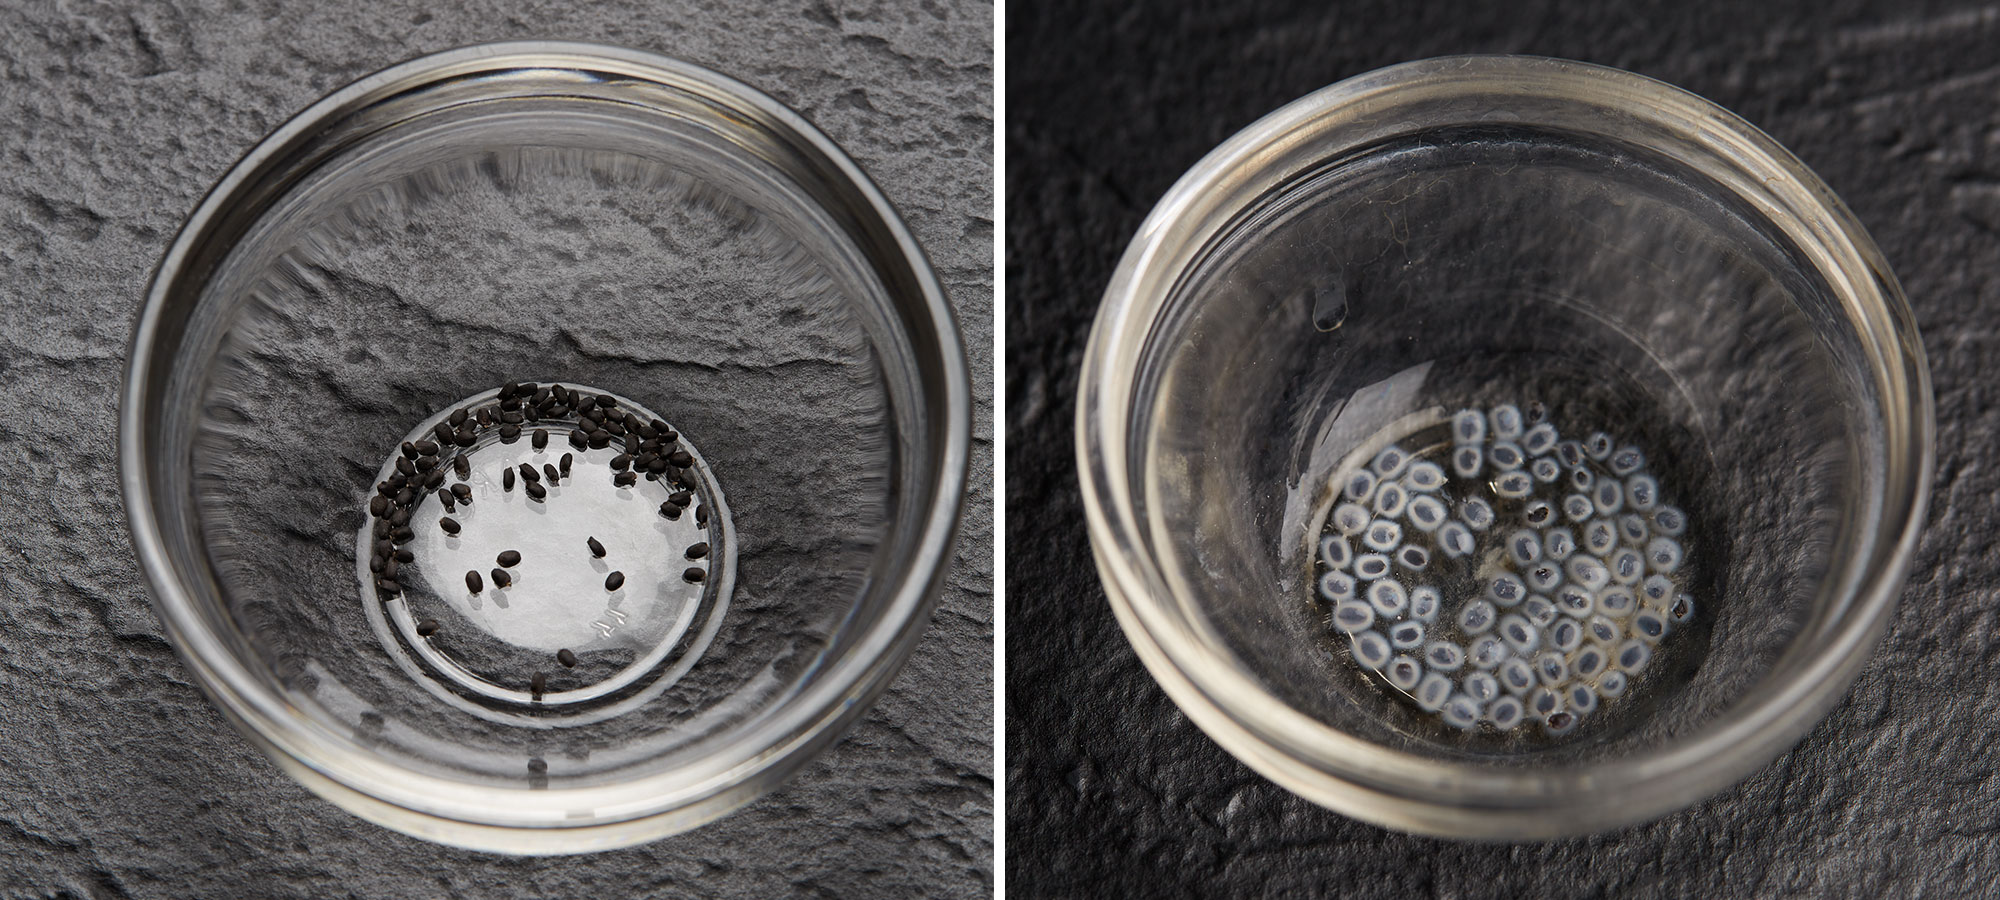 Image de gauche : Graines de basilic. Image de droite : Enveloppe gélatineuse couvrant des graines de basilic après trempage.